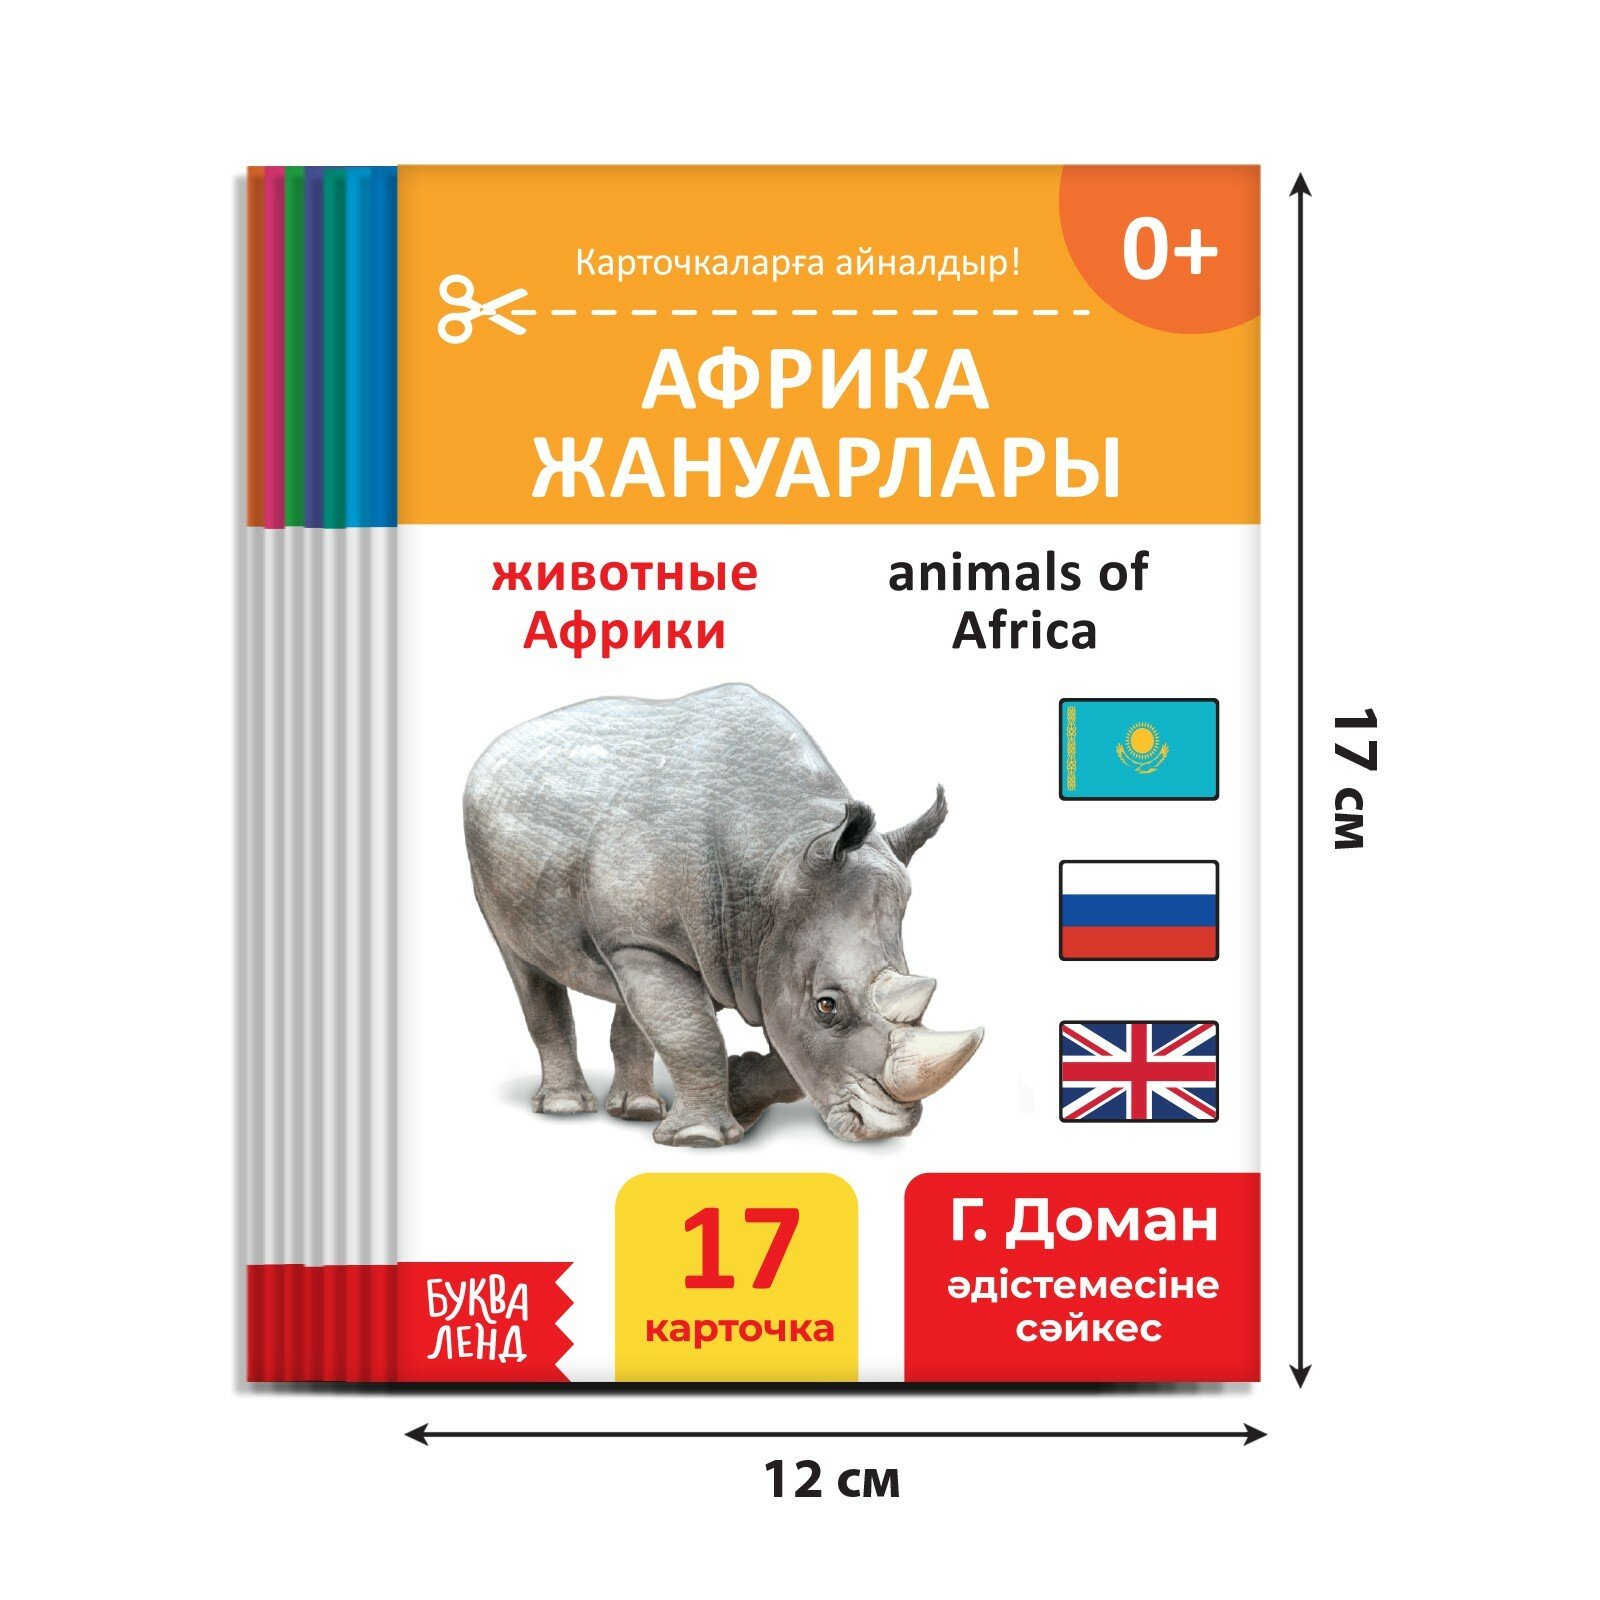 Набор книг по методике Г. Домана на казахском языке, 8 штук - фото №3